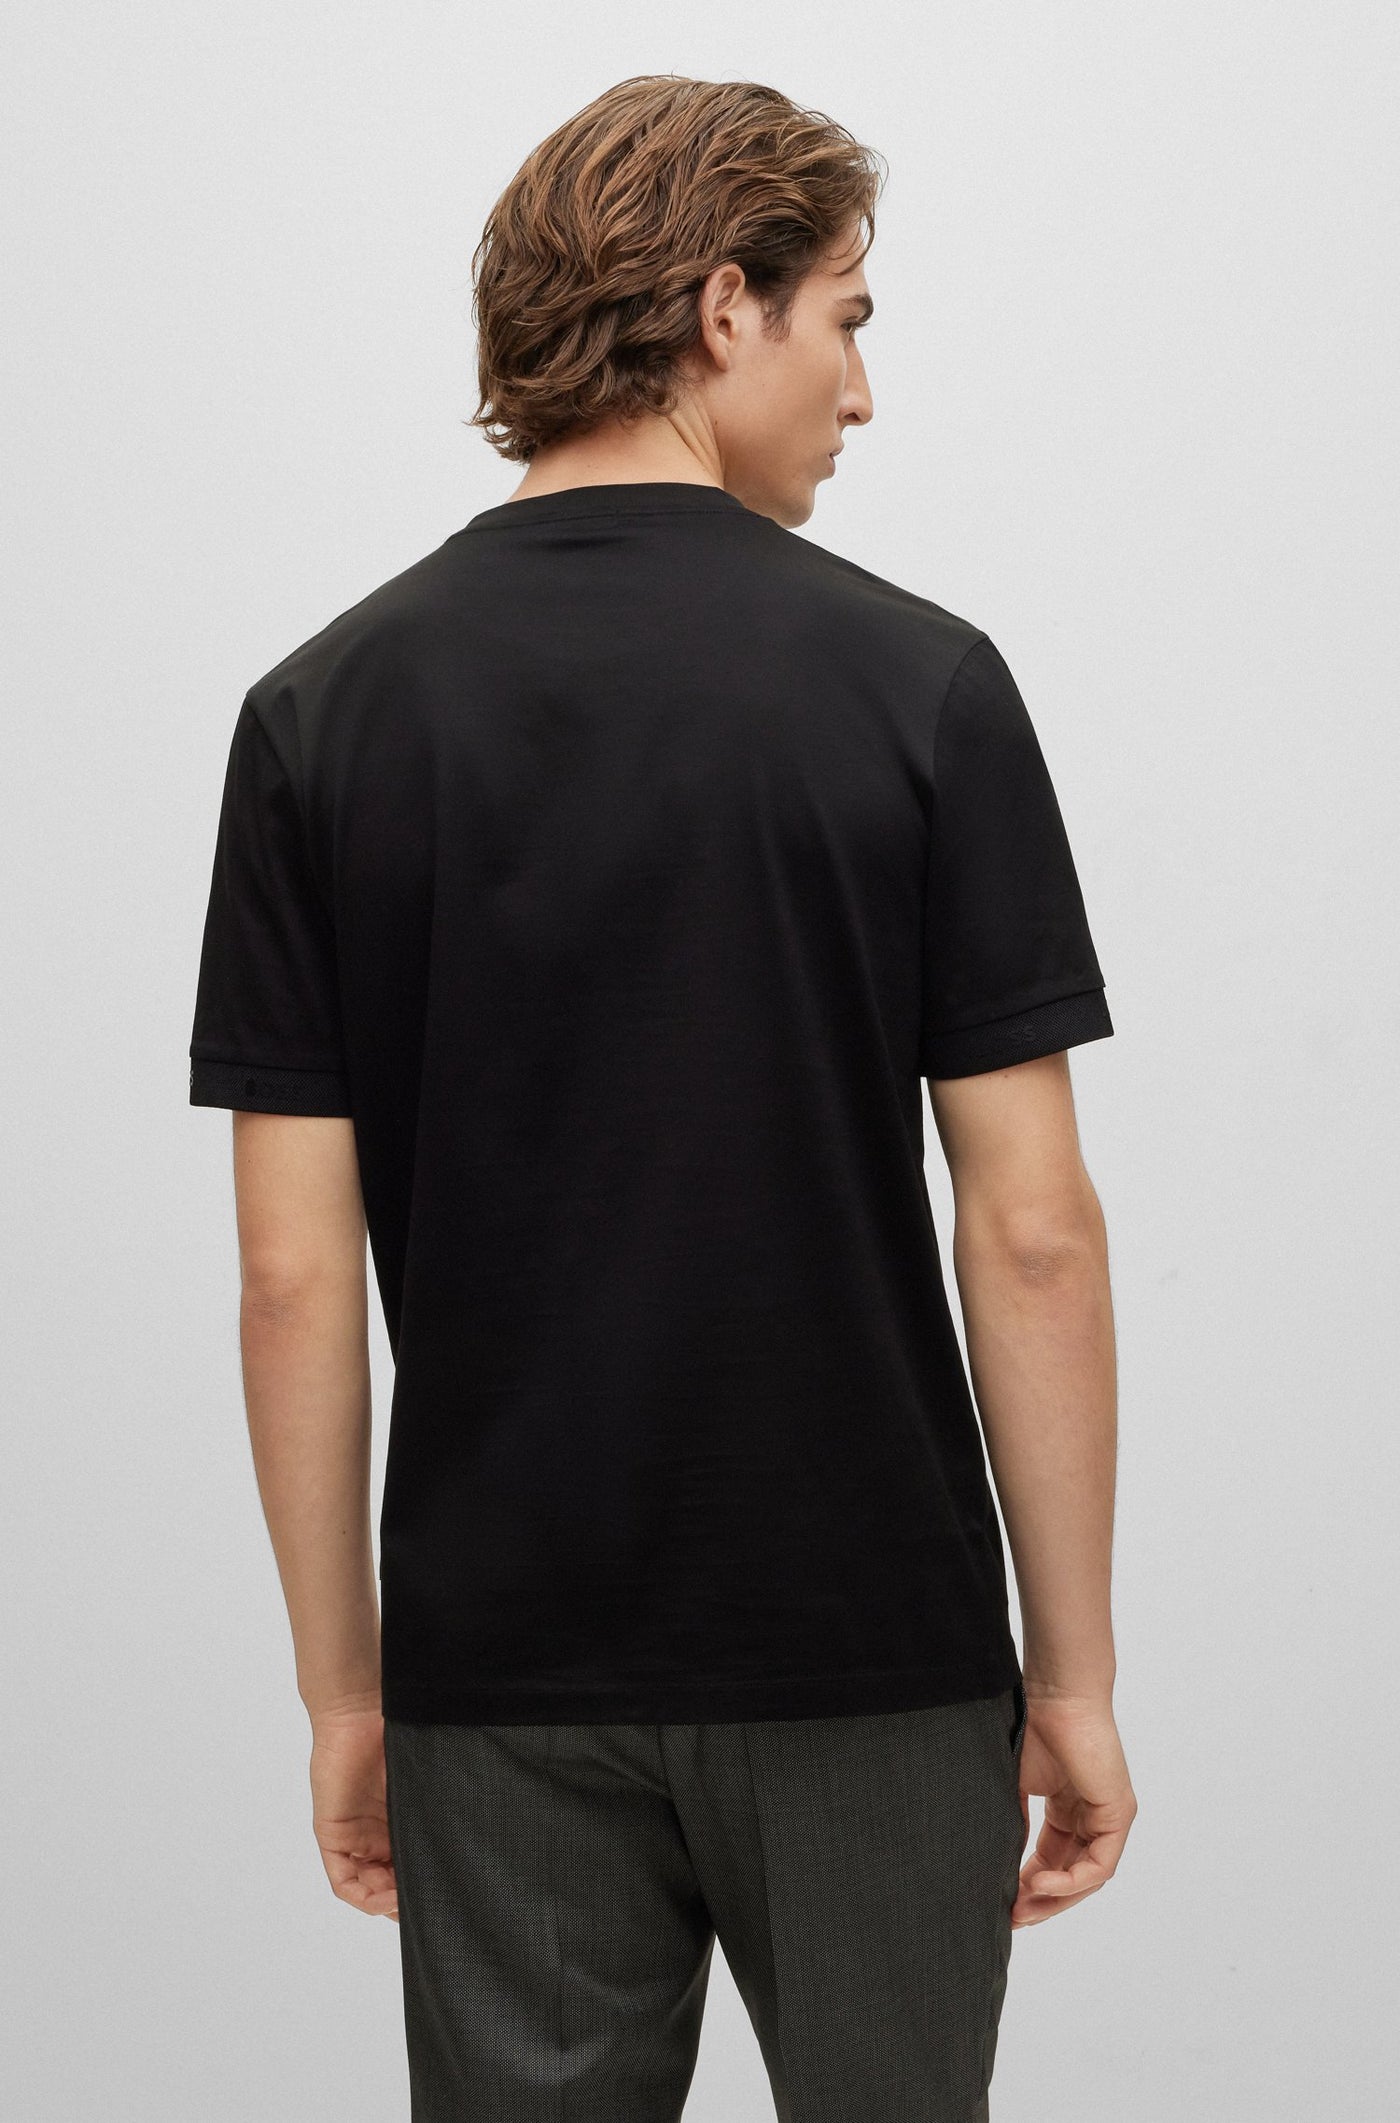 Tiburt 334 T-shirt In Black